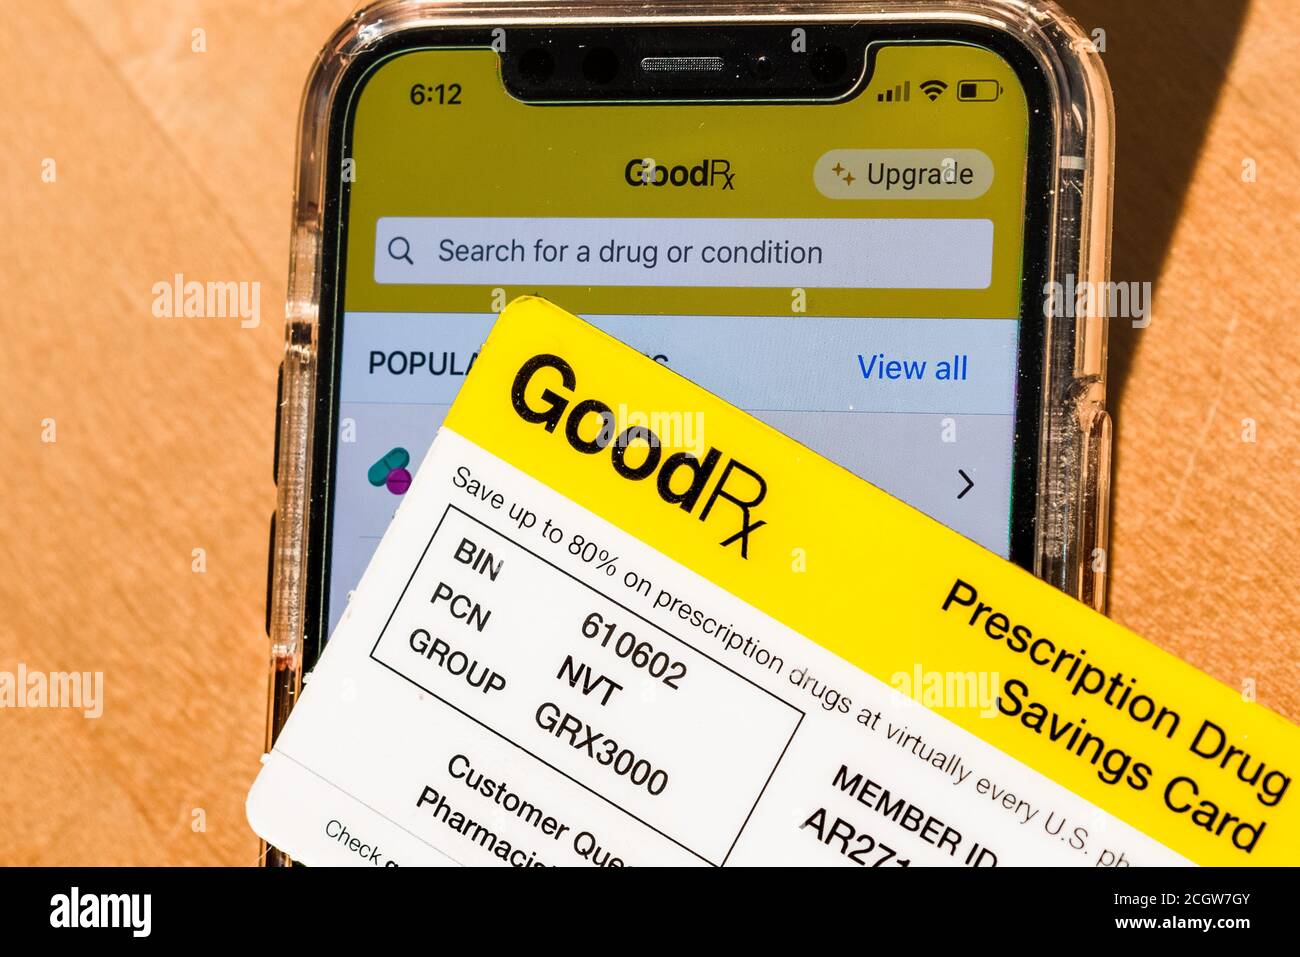 2 settembre 2020 Sunnyvale / CA / USA - GoodRx Card posizionata di fronte all'app GoodRx aperta su uno smartphone; GoodRx è una società di startup che fornisce la prescrizione Foto Stock